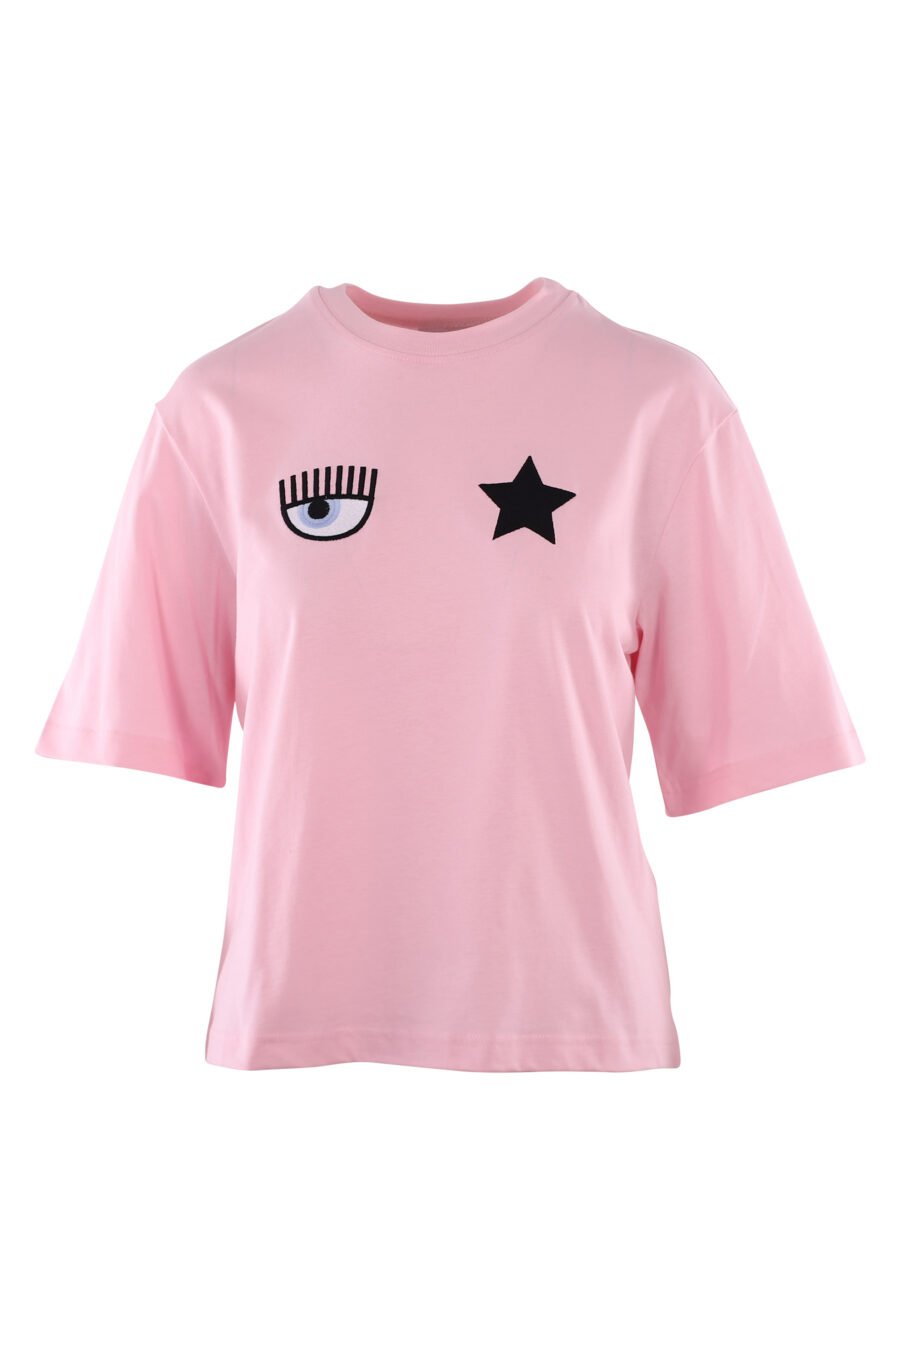 Camiseta rosa con logo ojo y estrella - IMG 6123